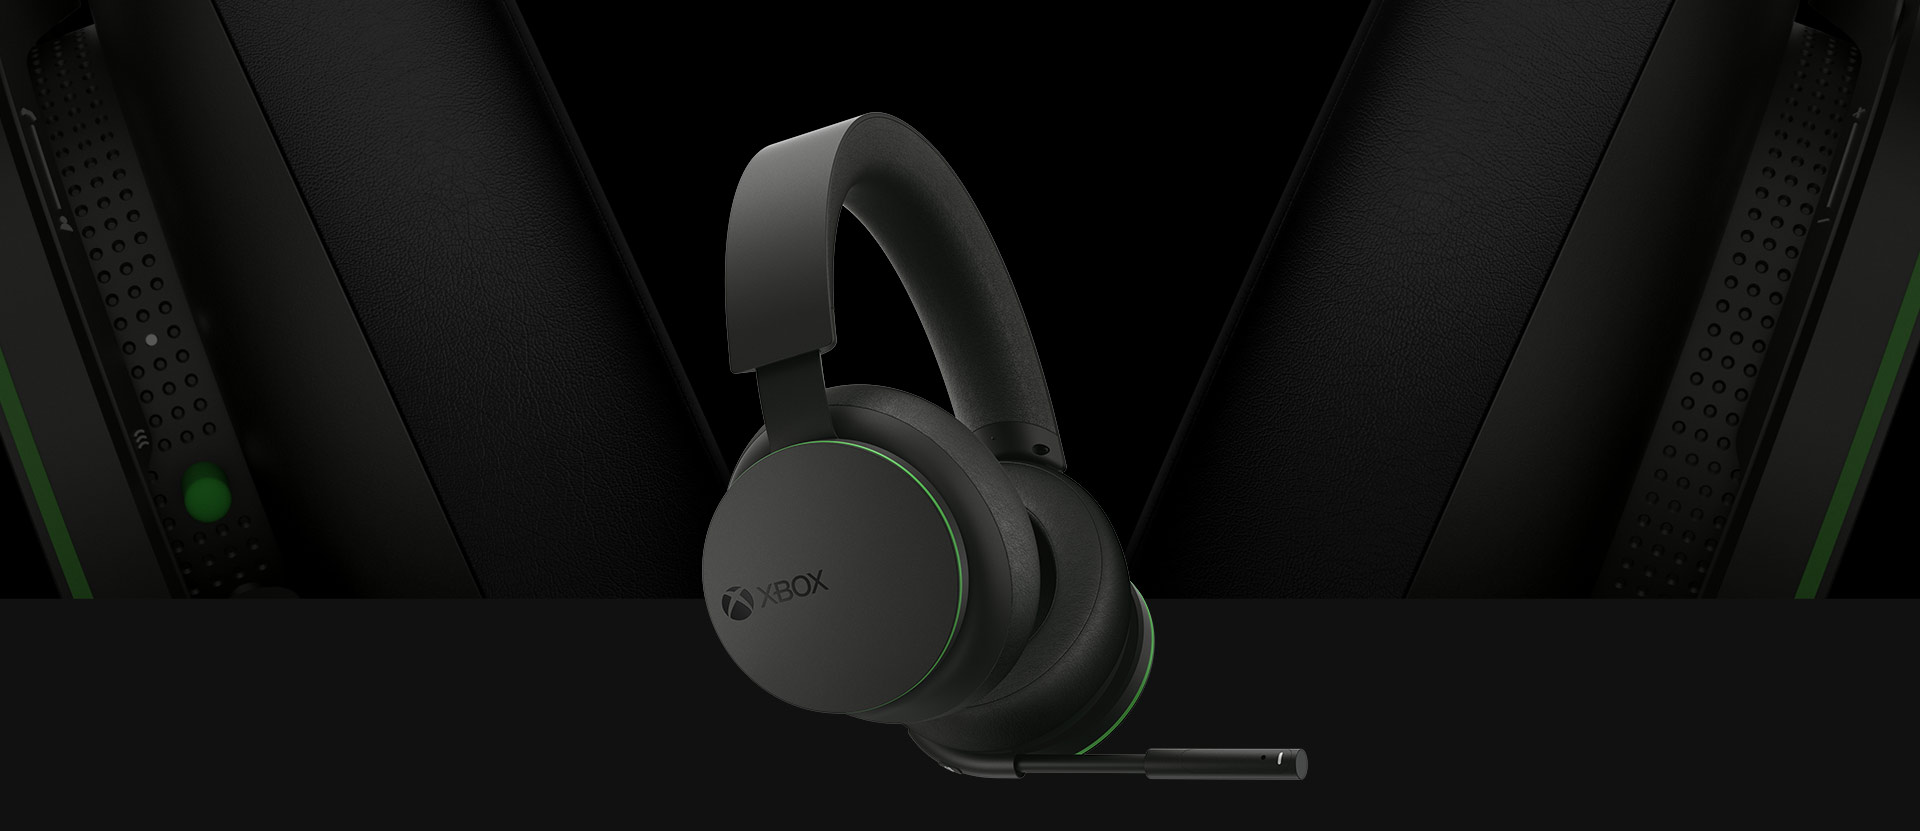 Μπροστινή προβολή υπό γωνία των ασύρματων ακουστικών Xbox. Μια μεγαλύτερη και πιο λεπτομερής προβολή από τα μαξιλάρια των ακουστικών απεικονίζεται πίσω από τα ακουστικά.